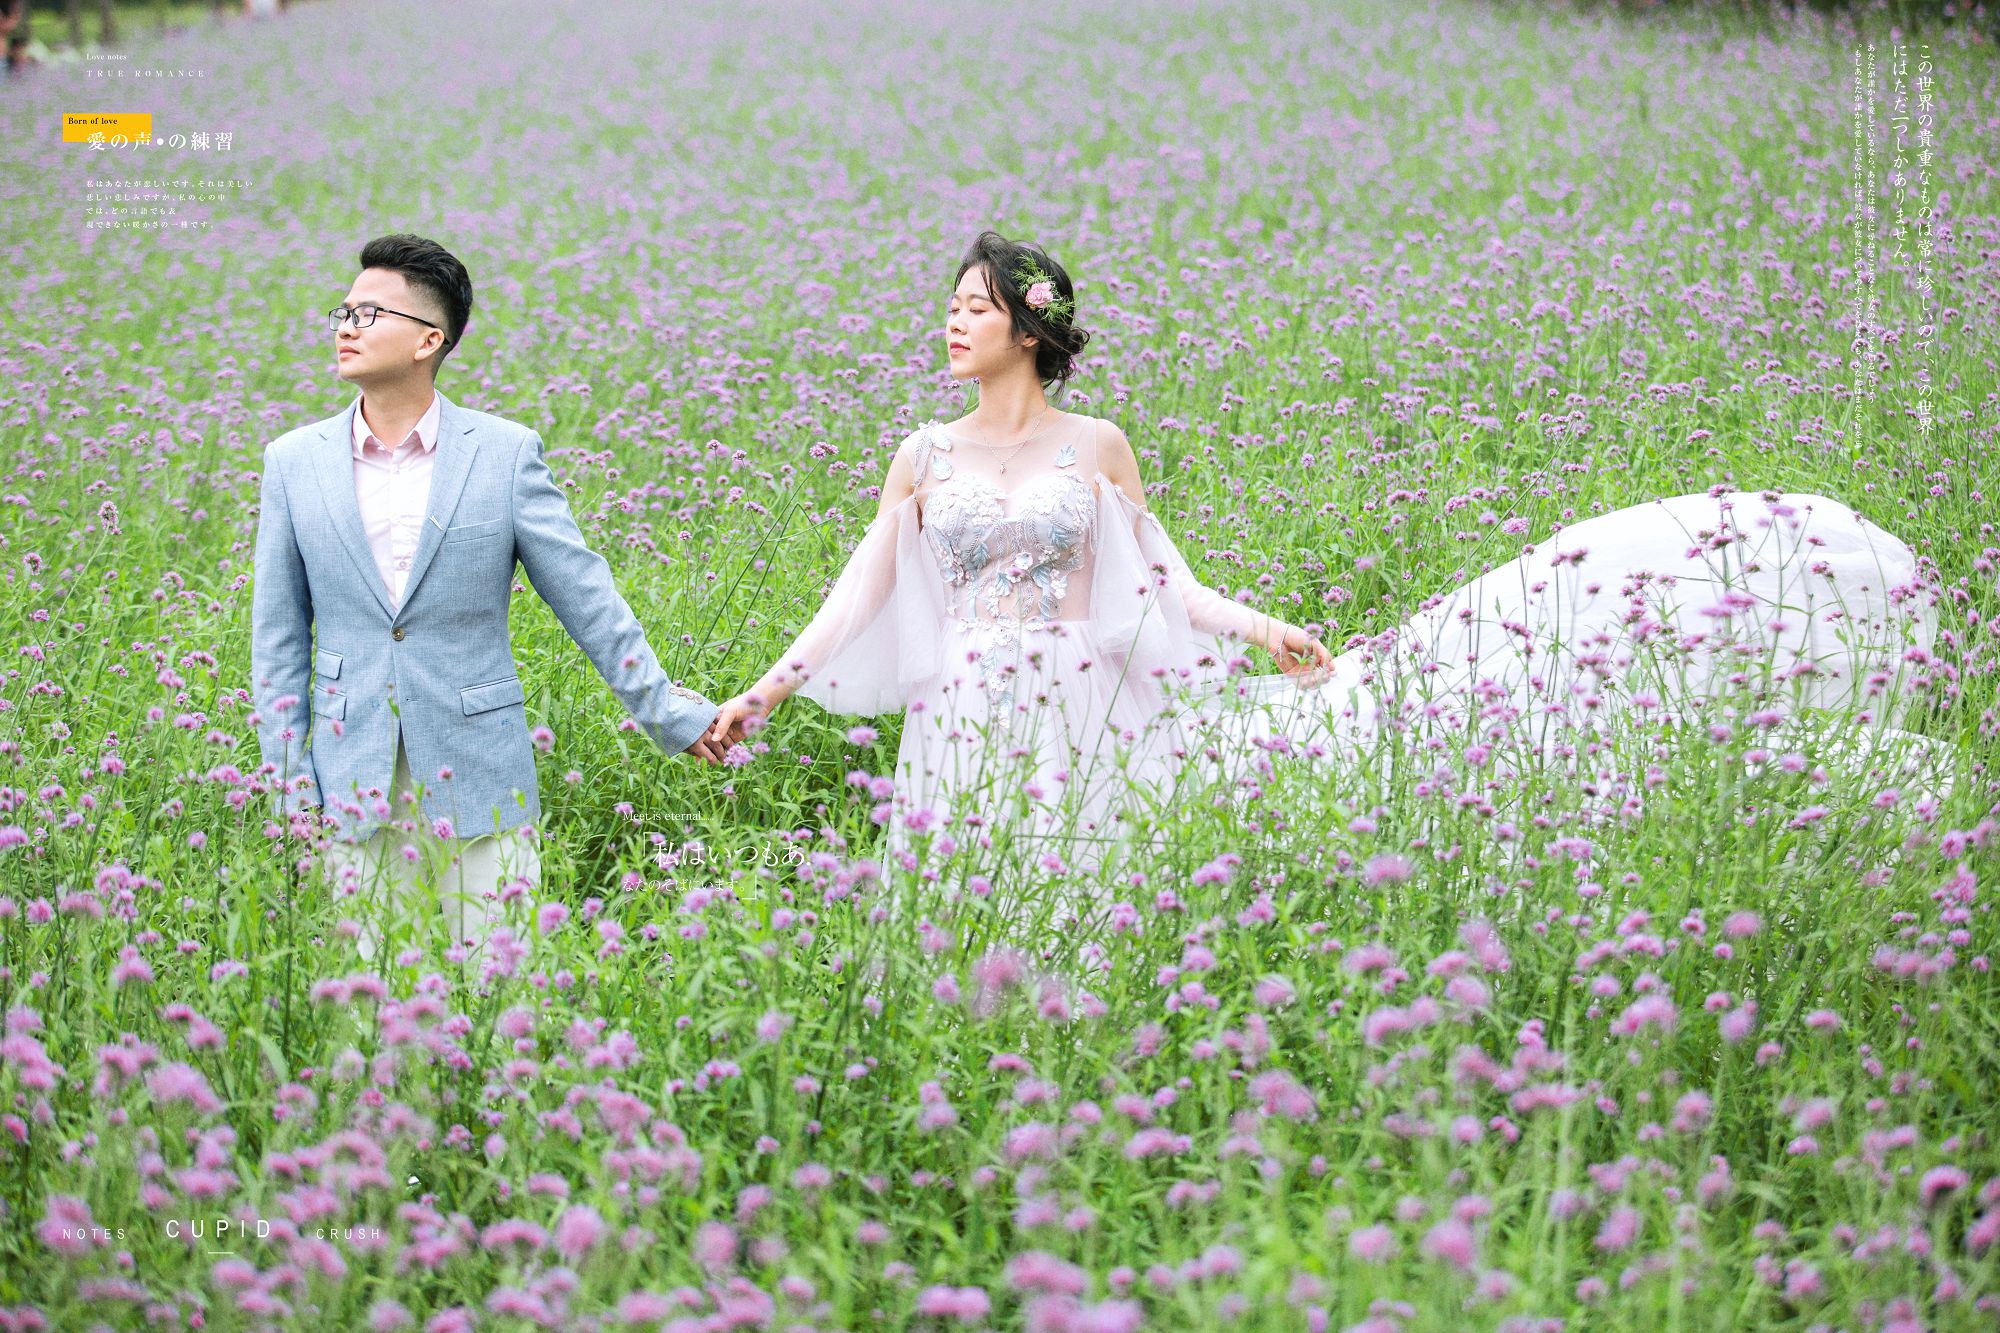 2019年5月深圳结婚照,深圳婚纱照,婚纱照图片